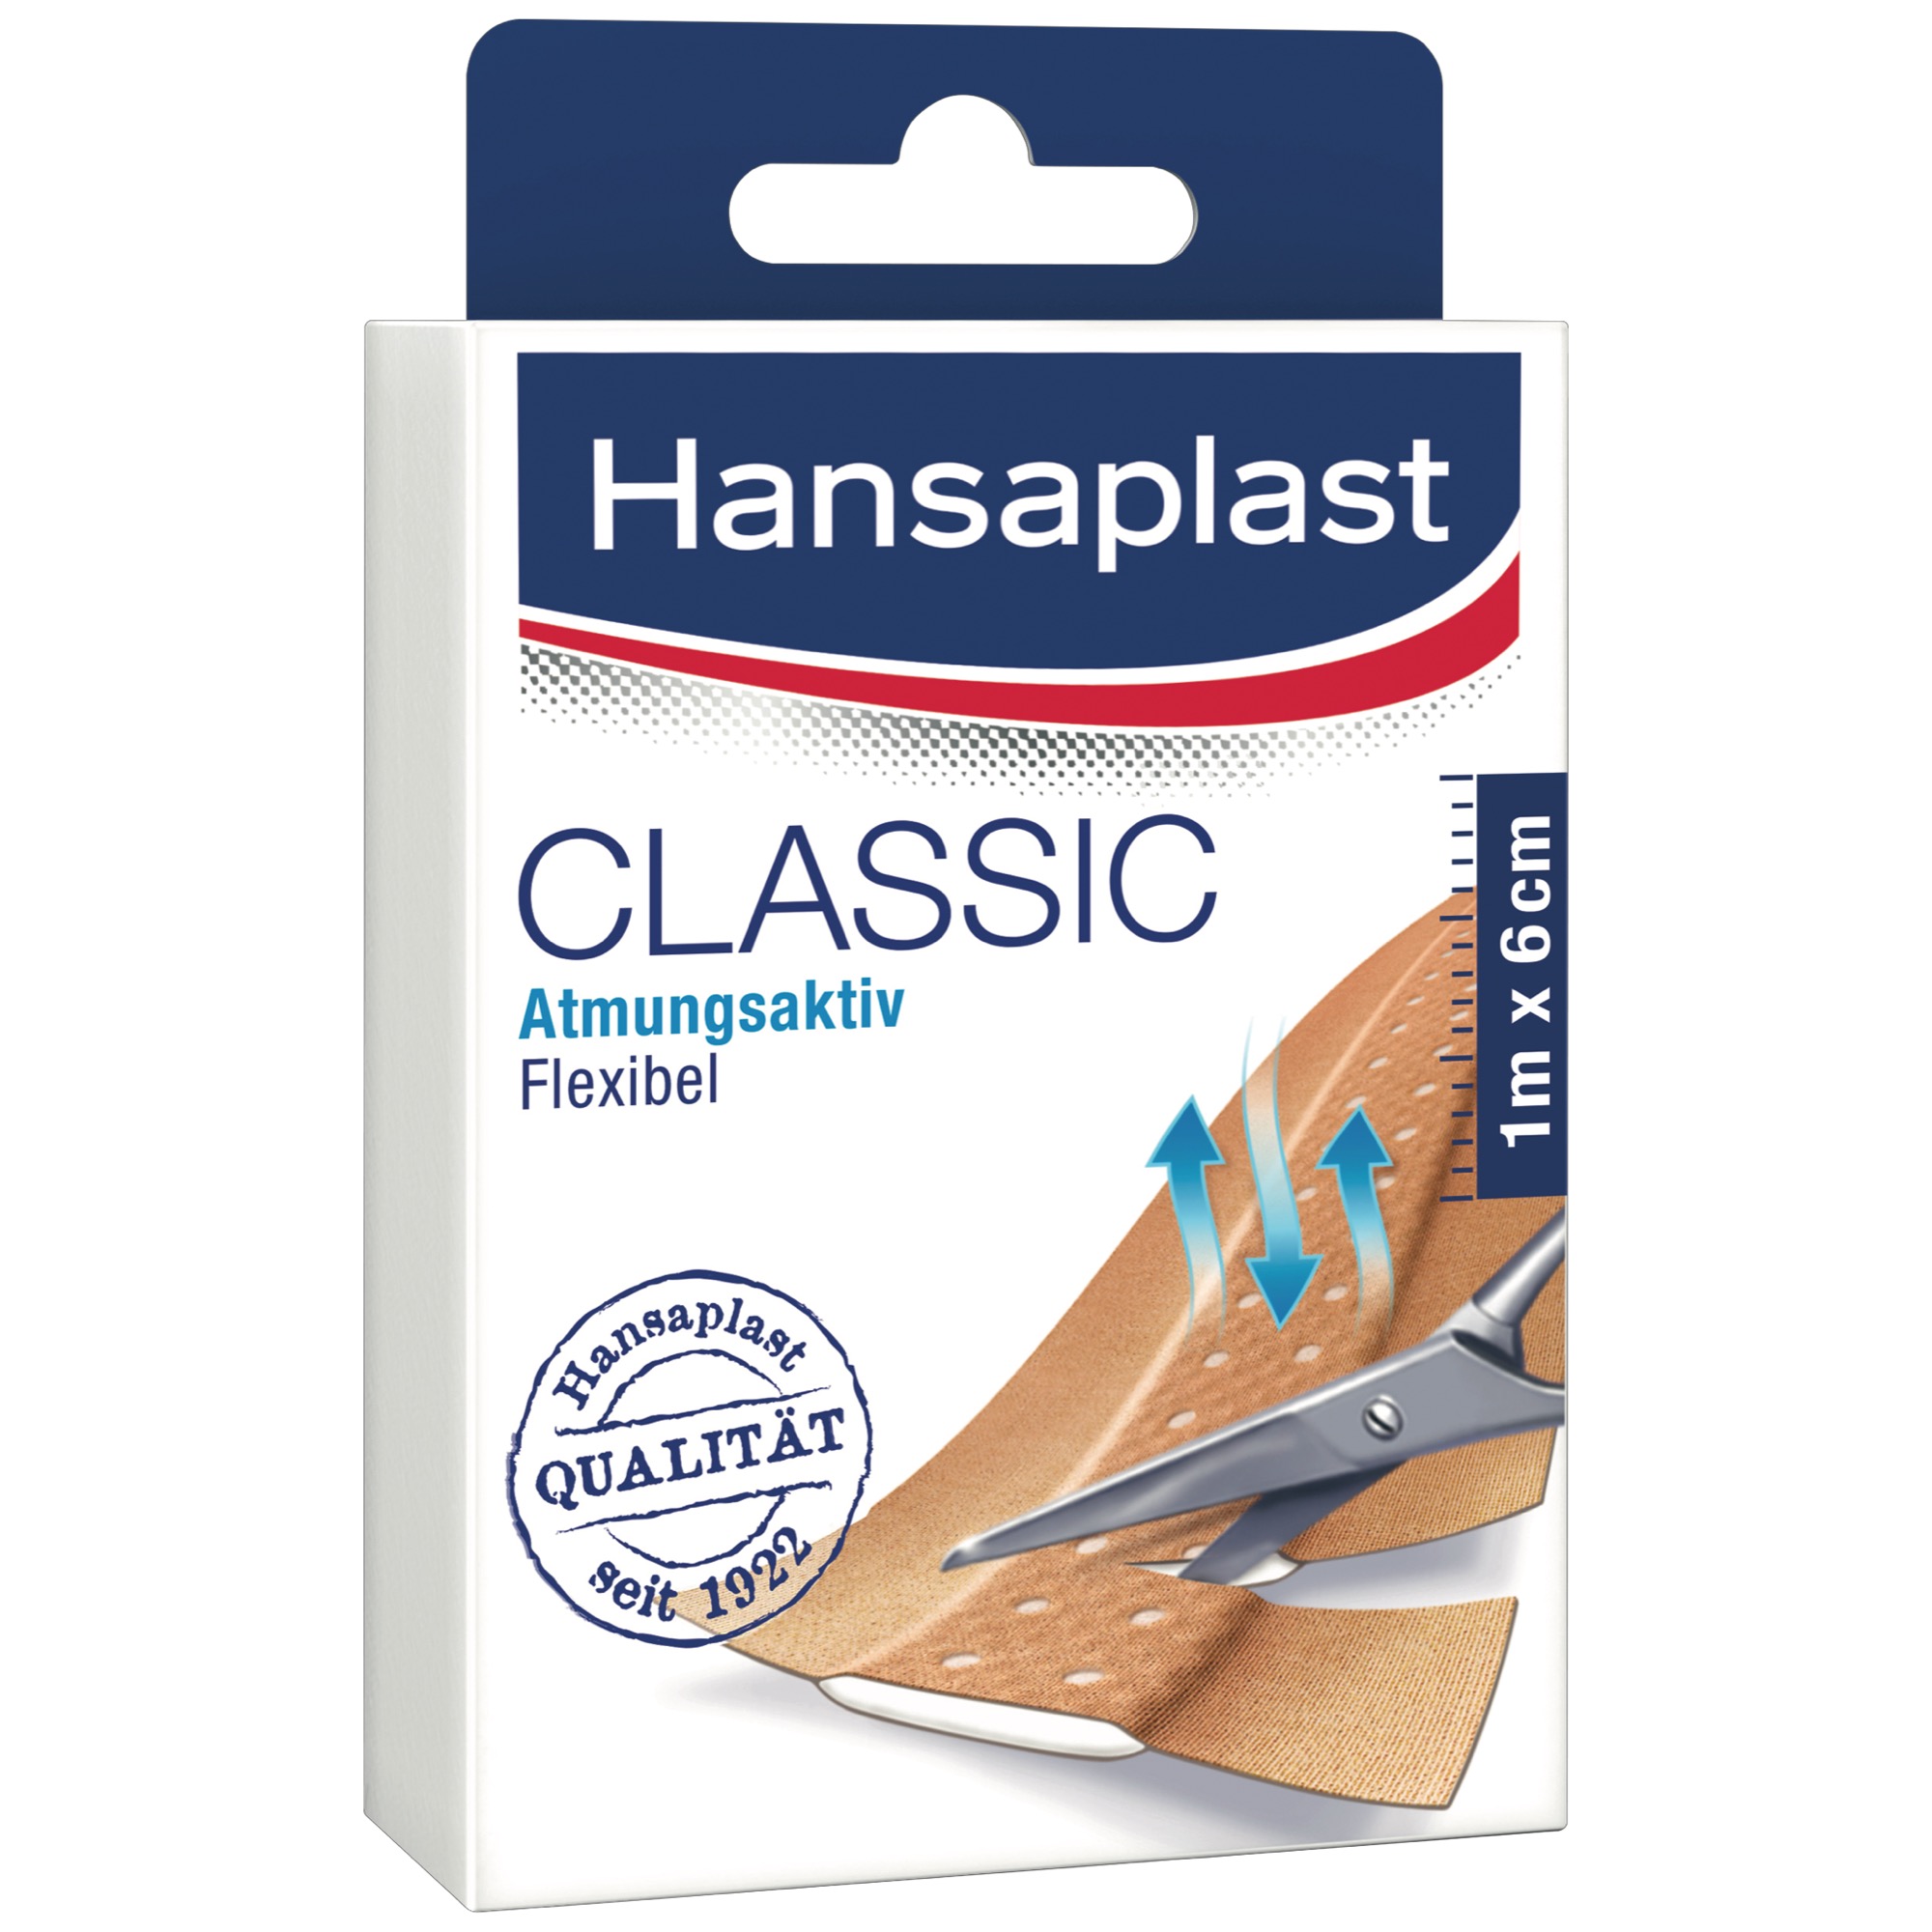 Hansaplast classic 1mx6cm